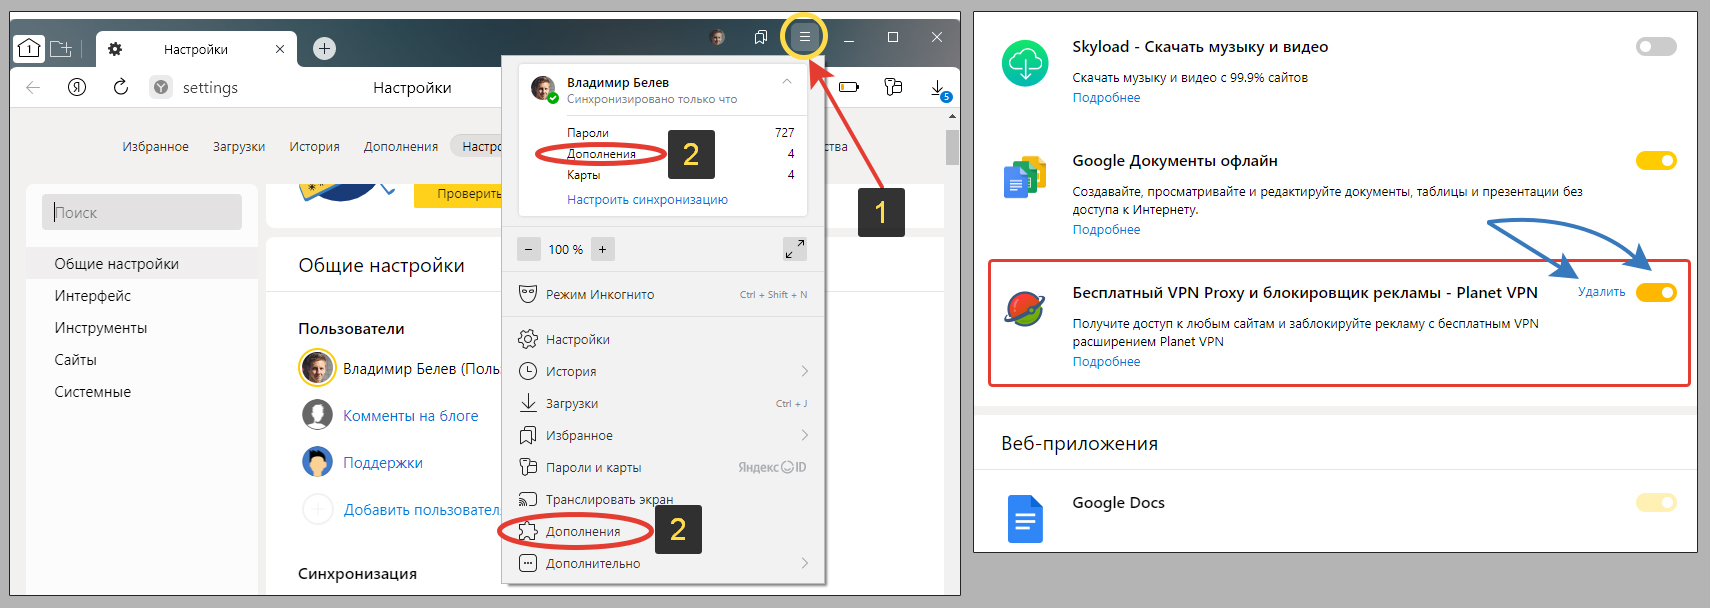 Раздел дополнений Яндекс браузера, окно с включенным VPN и кнопкой удаления.